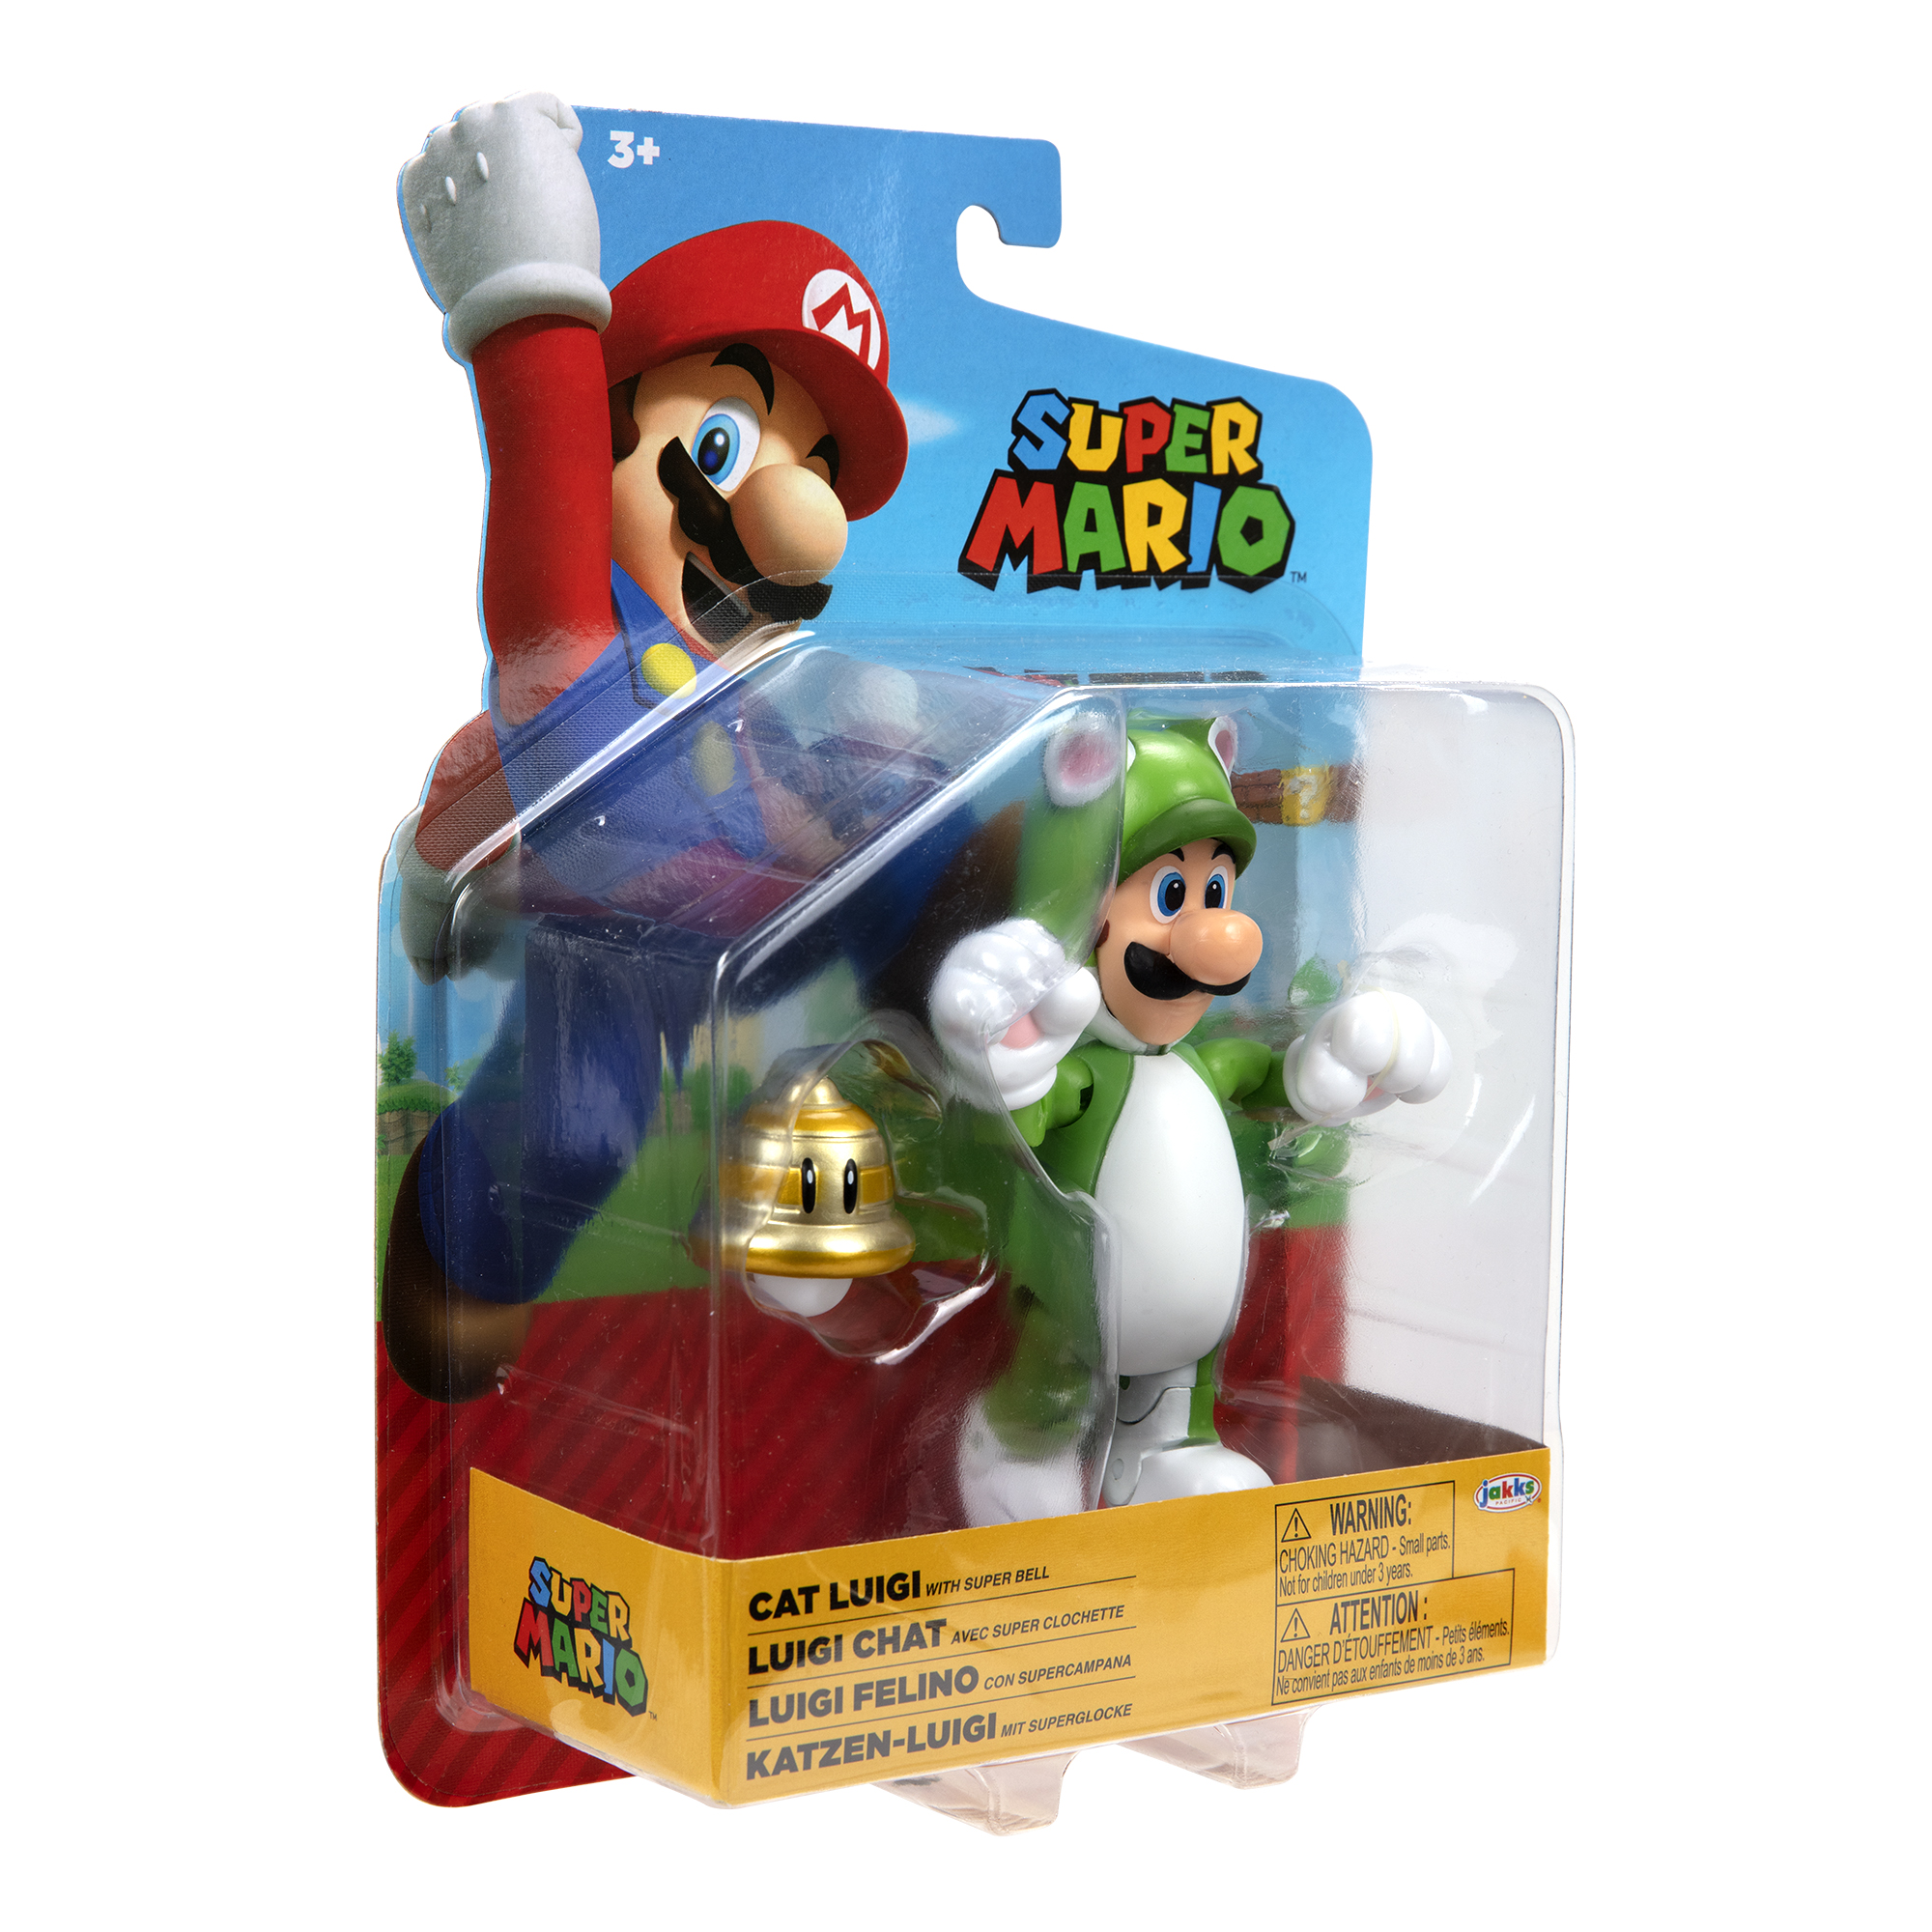 SUPER MARIO Nintendo Super Mario Spielware Figur Superball, 10 cm with Cat Luigi